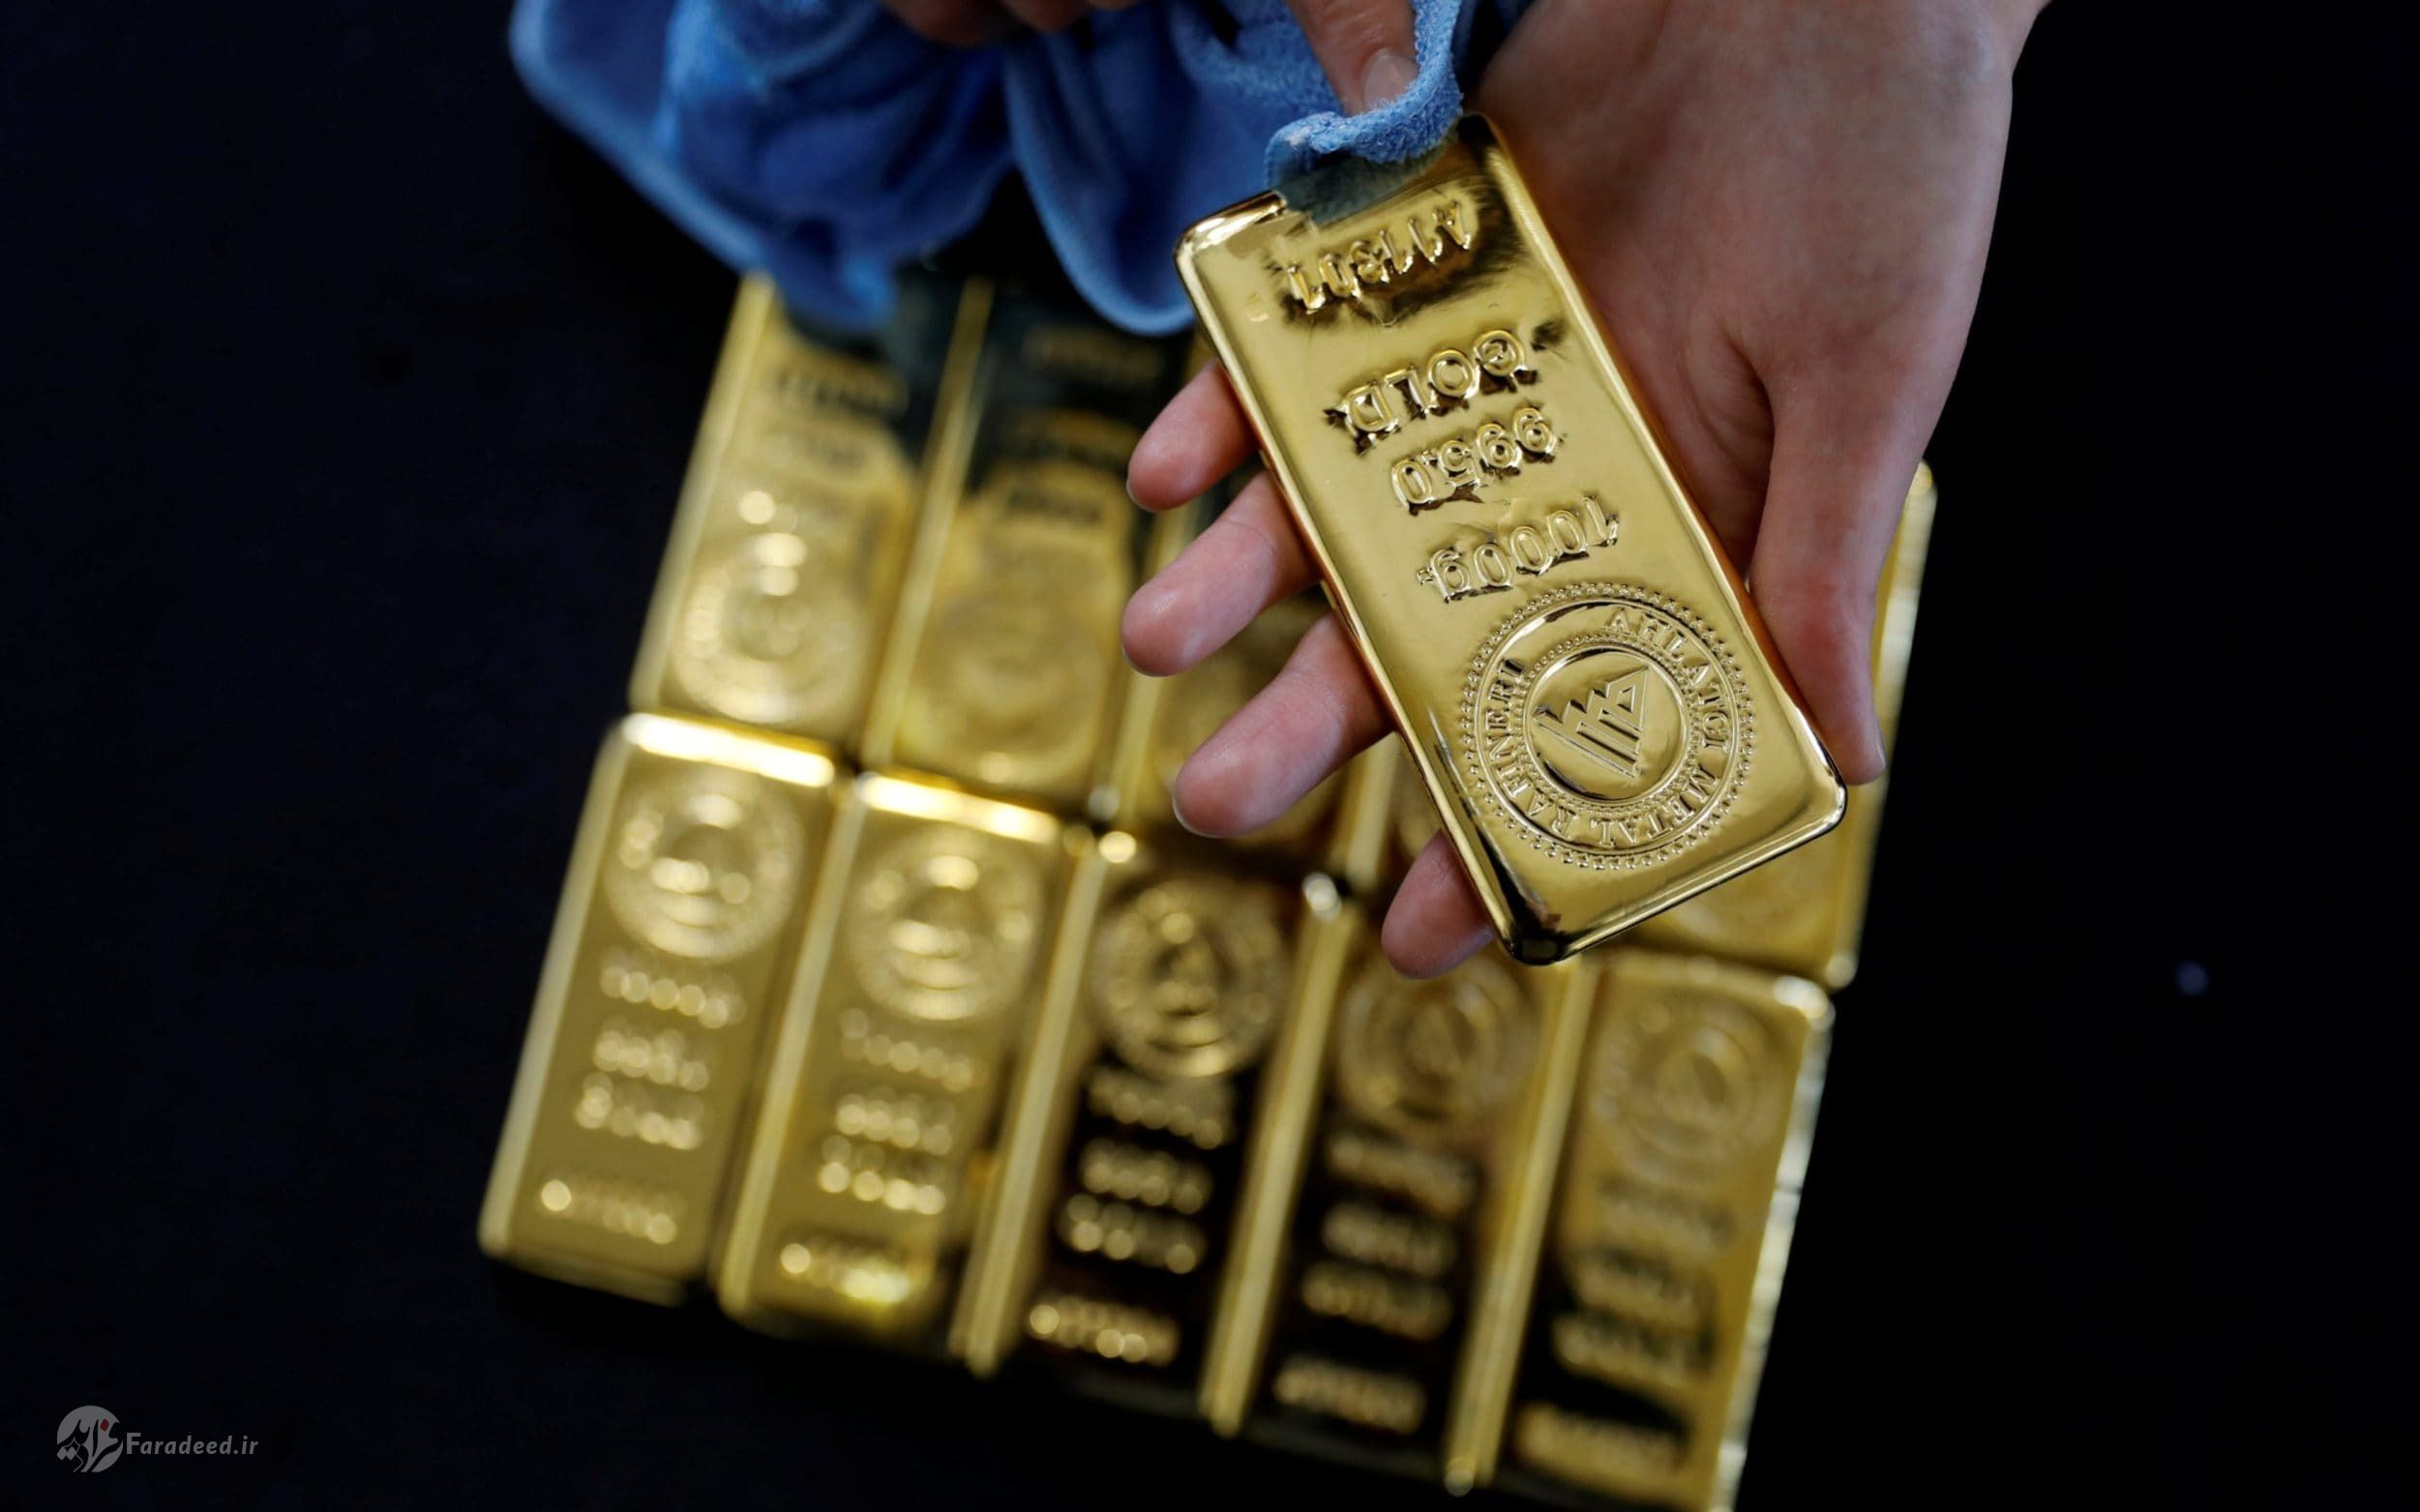 نرخ ارز، دلار، یورو، سکه و طلا در بازار امروز سه شنبه ۱۴ مرداد ۹۹